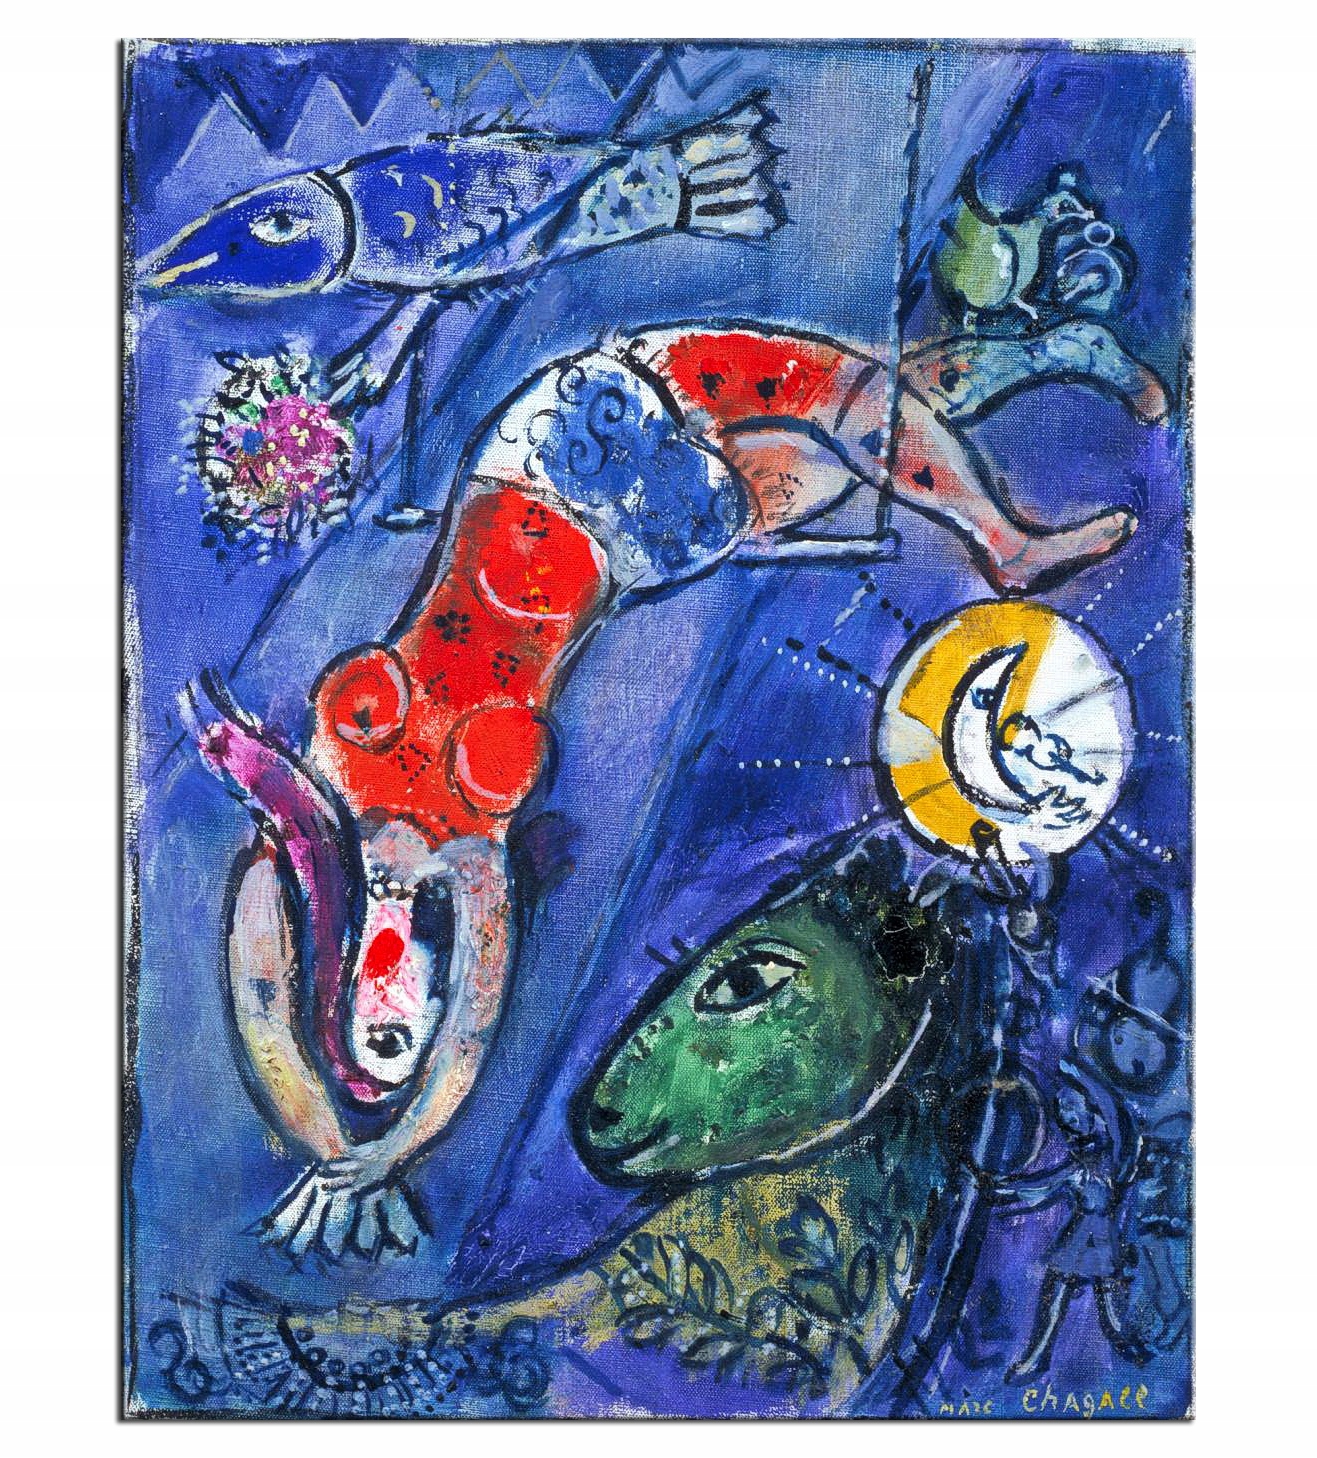 Hairdresser Intense Squirrel Niebieski Cyrk - M. Chagall reprodukcja na płótnie 9410007612 - Allegro.pl